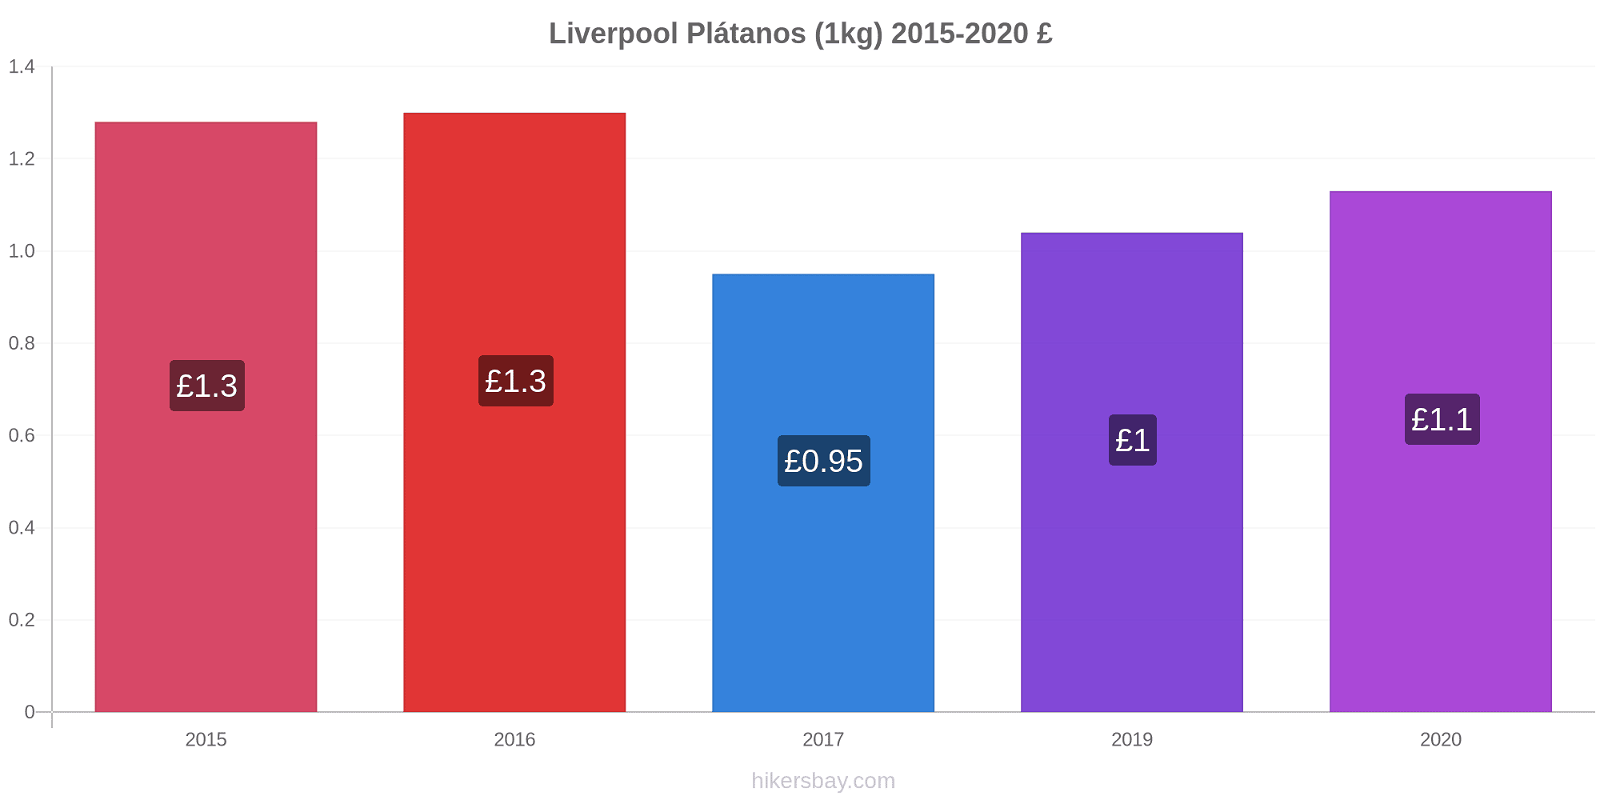 Liverpool cambios de precios Plátano (1kg) hikersbay.com